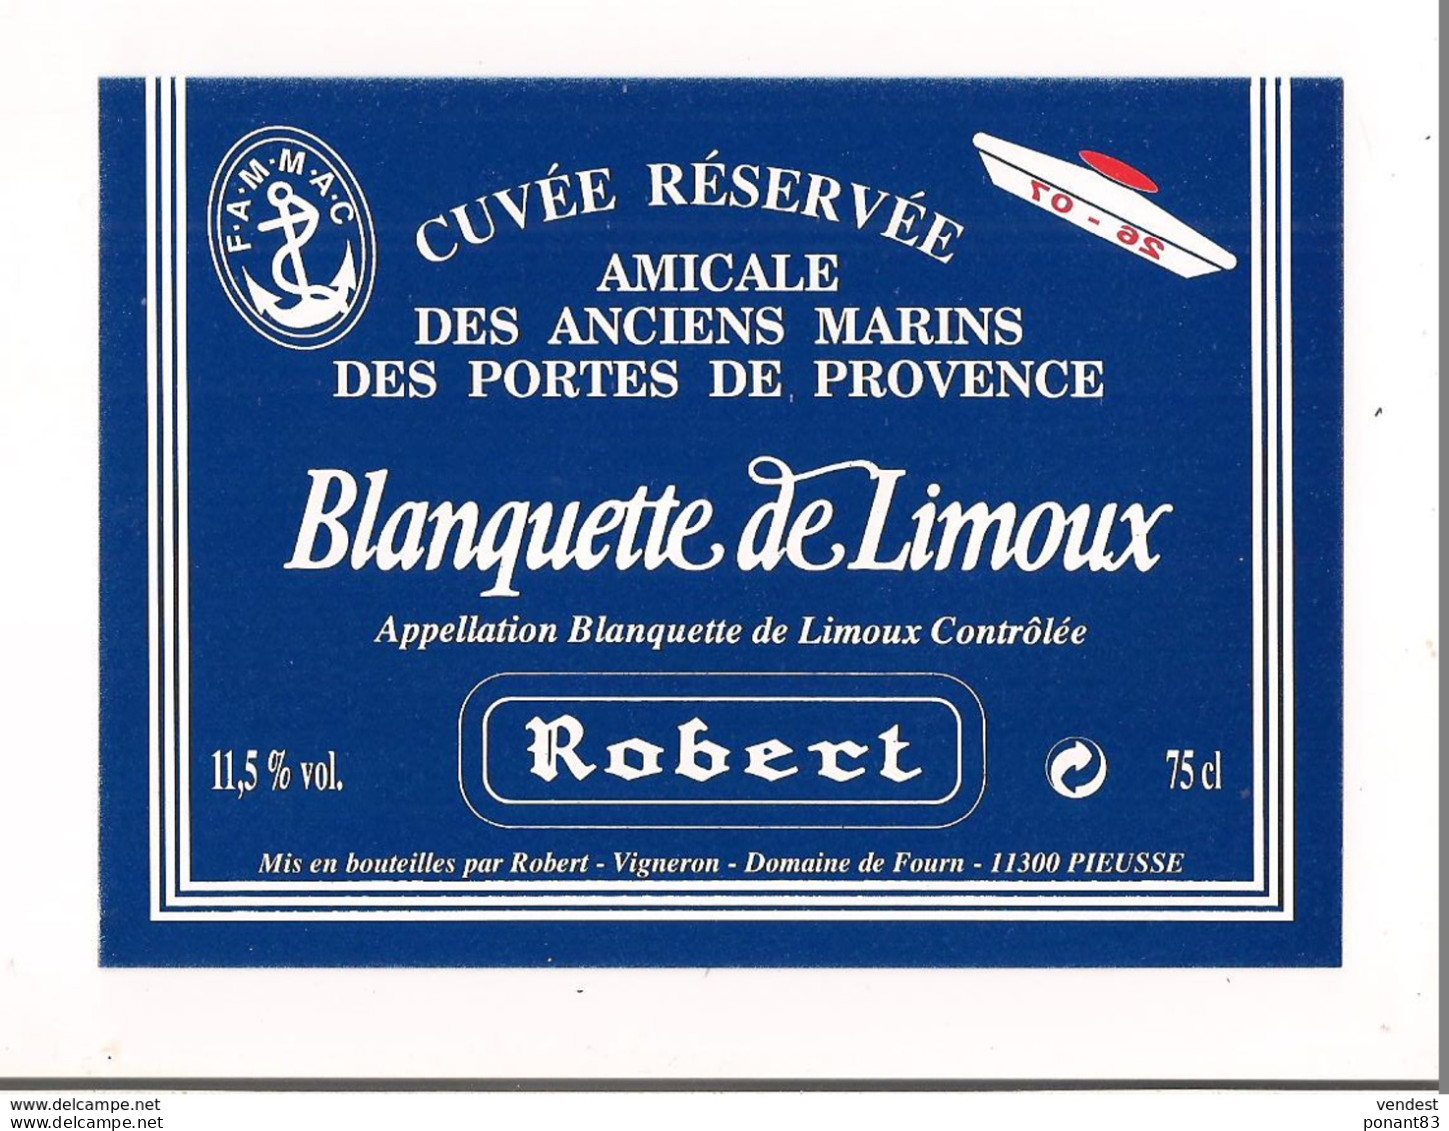 Etiquette Blanquette De Limoux - Cuvée Réservée Amicale Des Anciens Marins  Des Portes De Provence - Robert - - White Wines